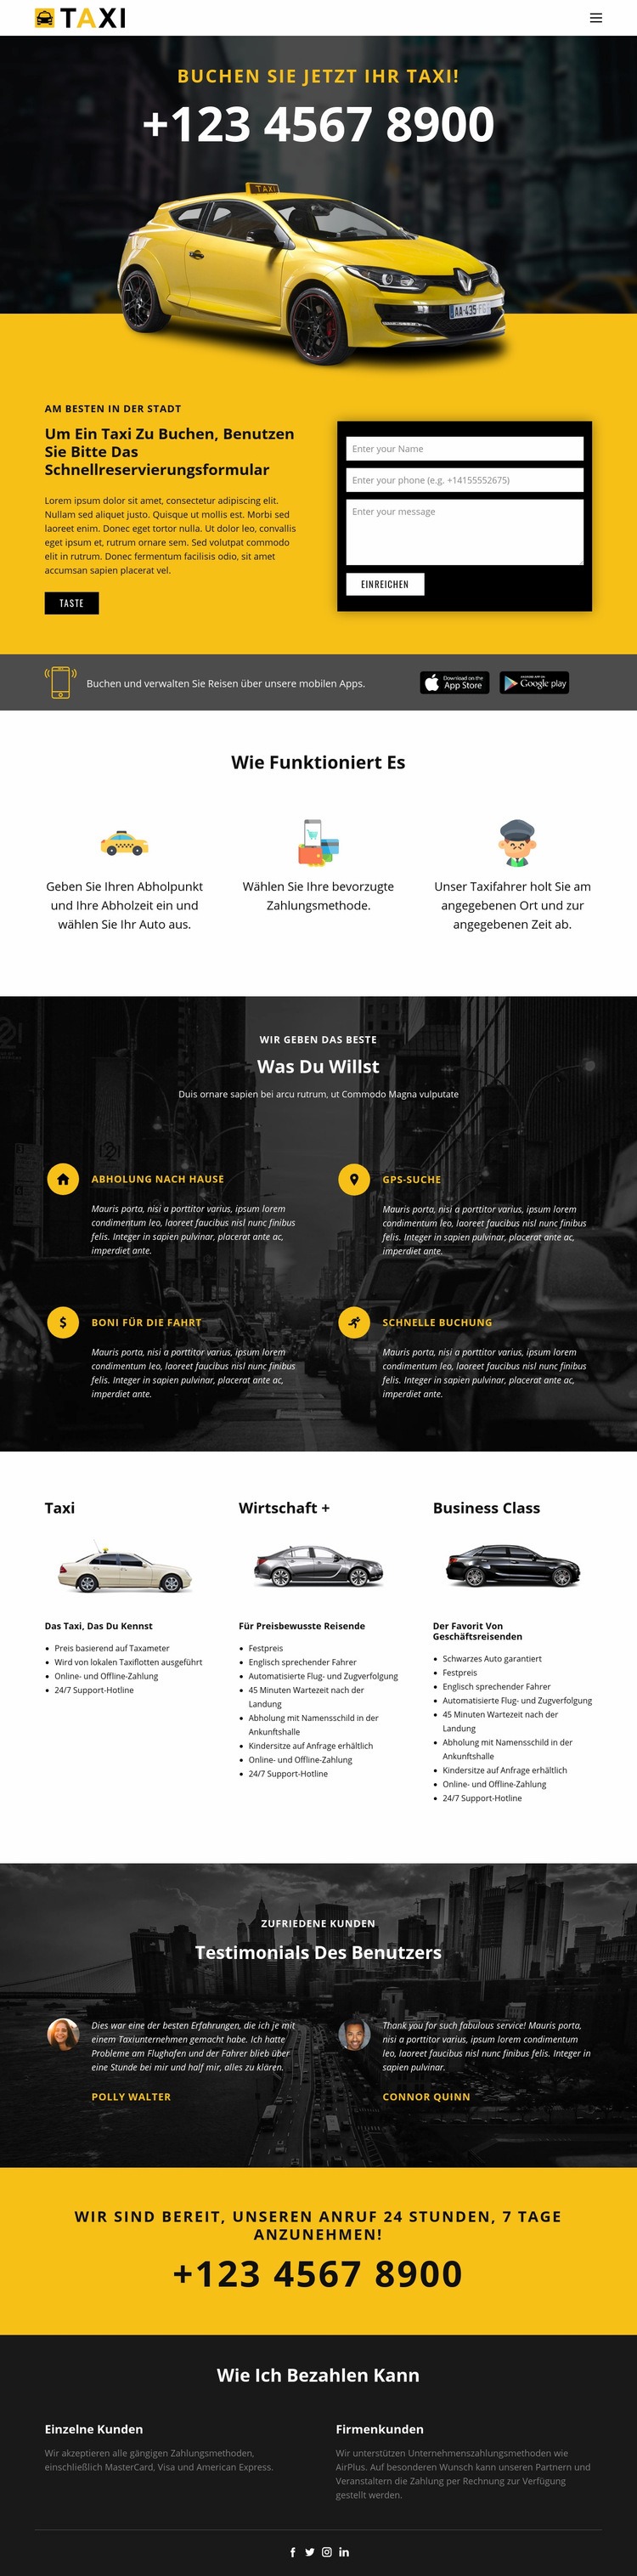 Schnellste Taxis Website design